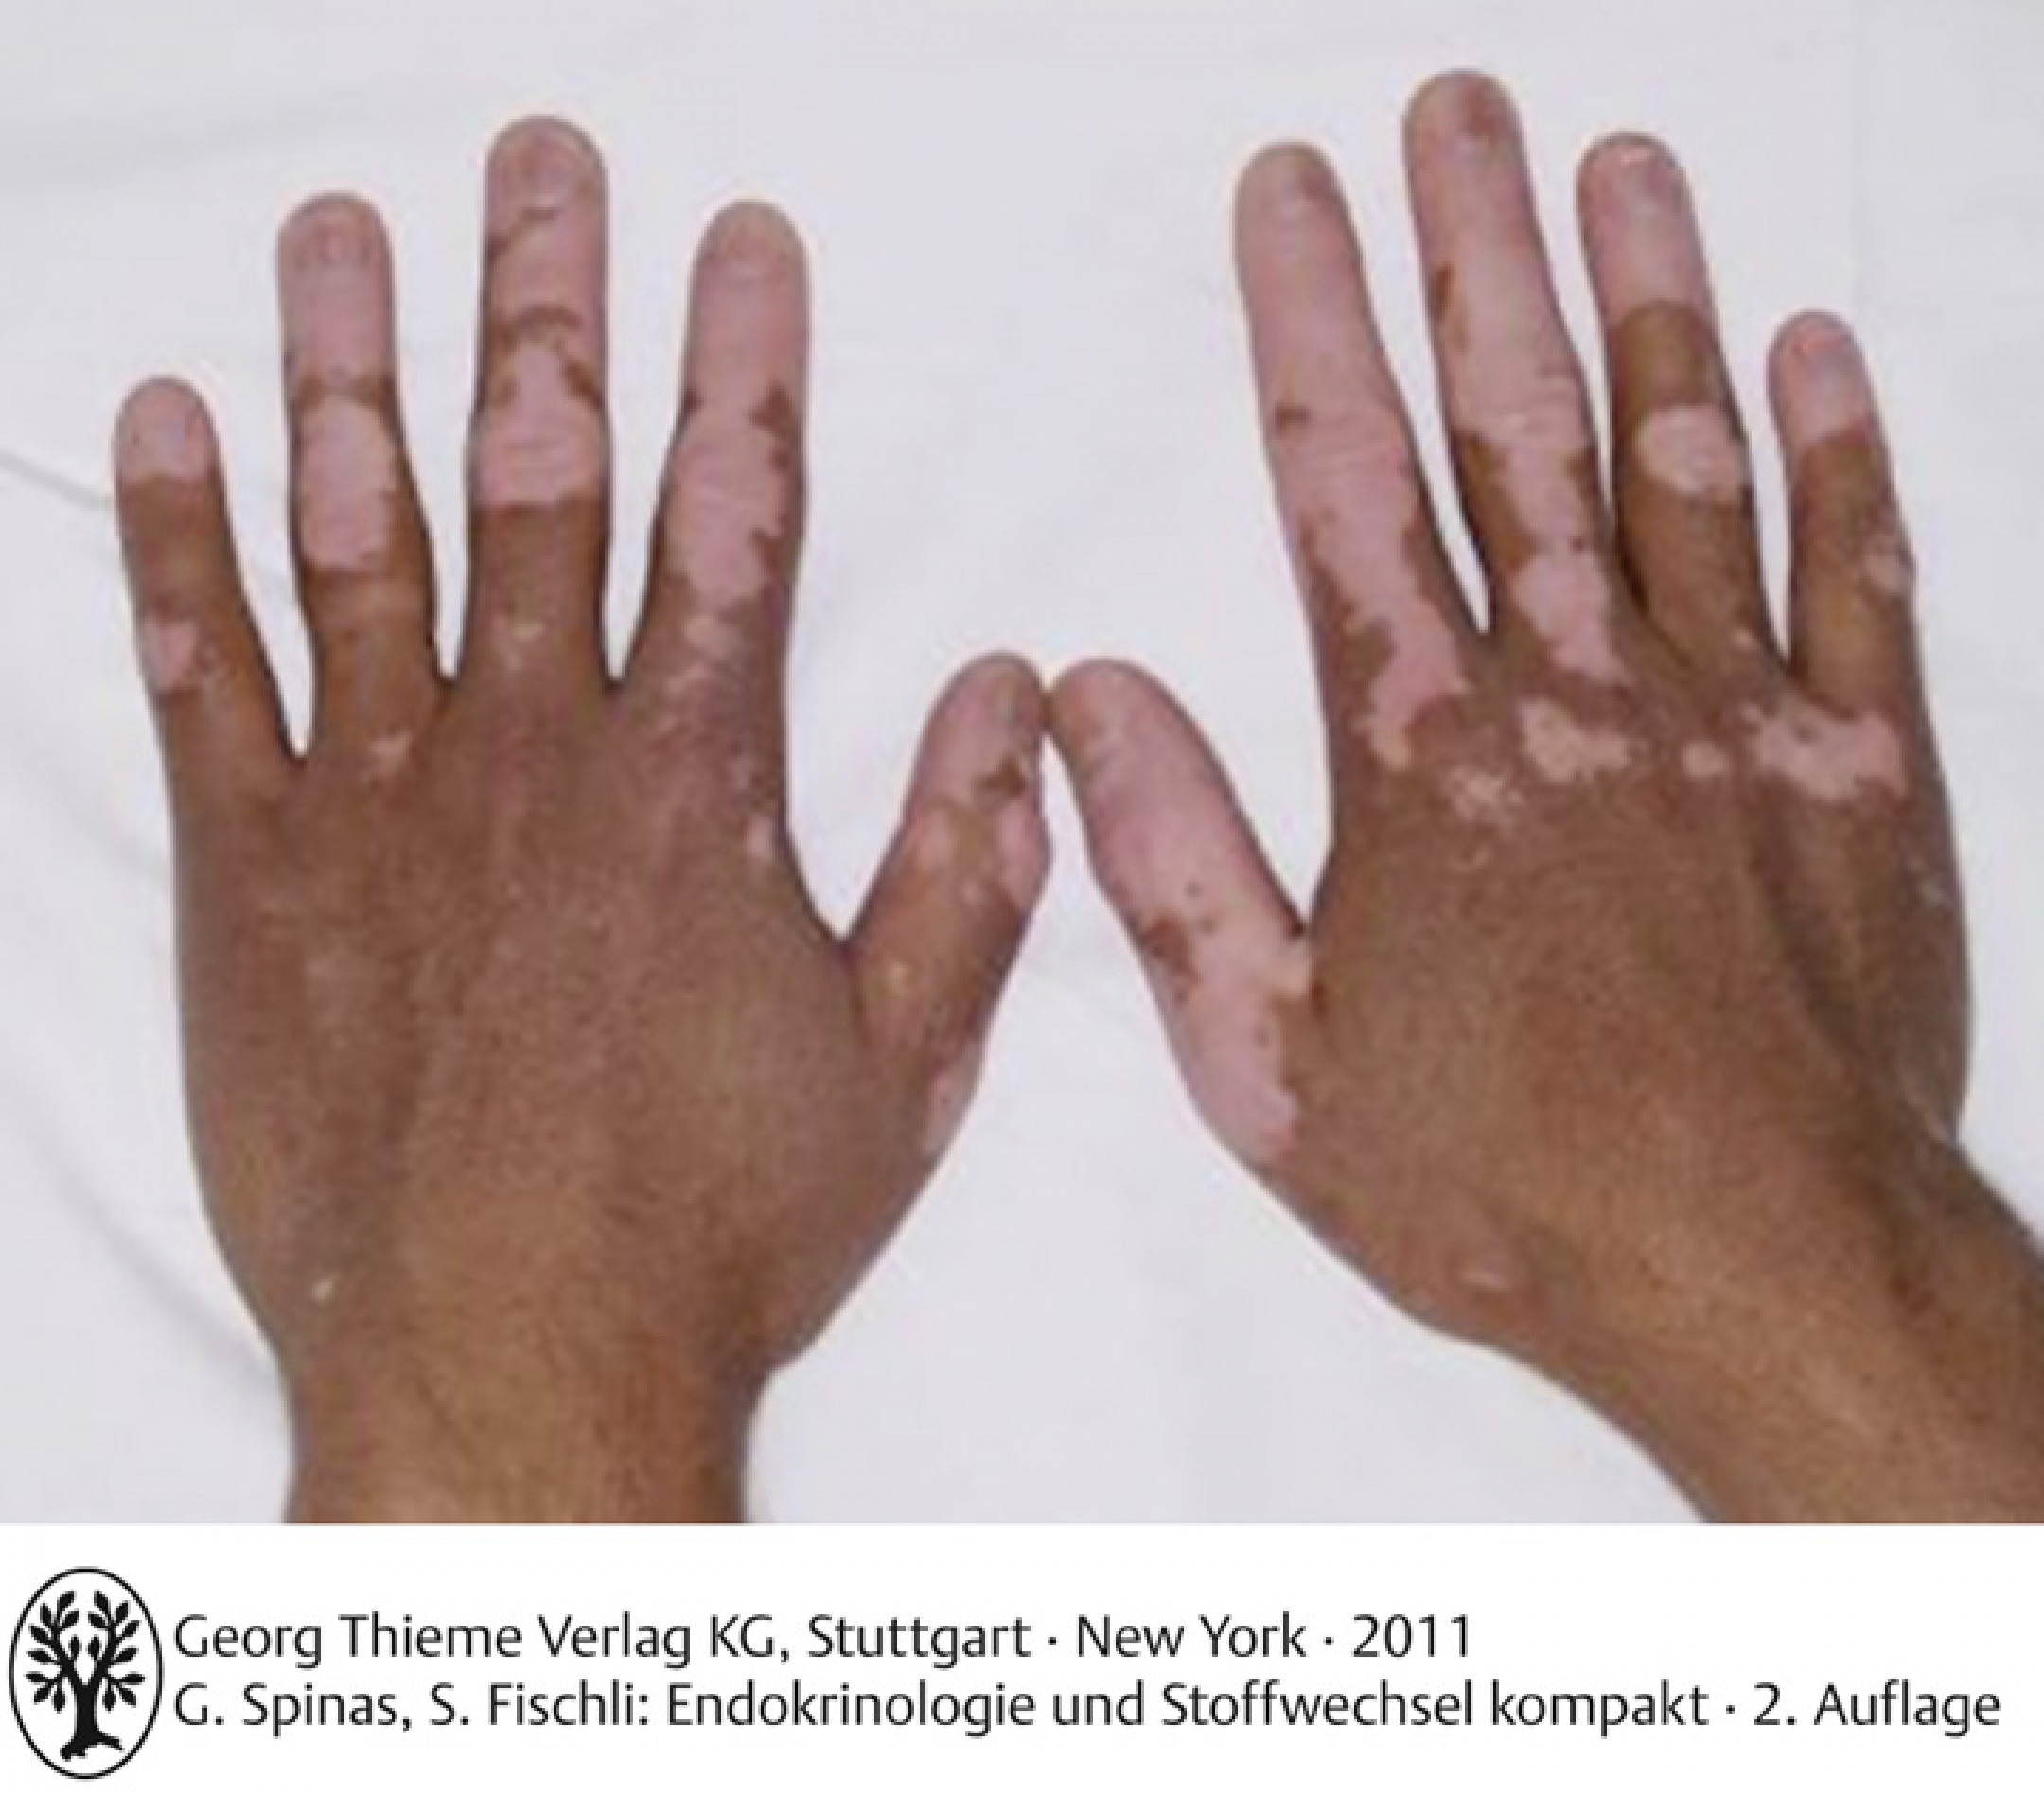 Vitiligo bei einem Patienten mit polyglandulärem Autoimmunsyndrom Typ II